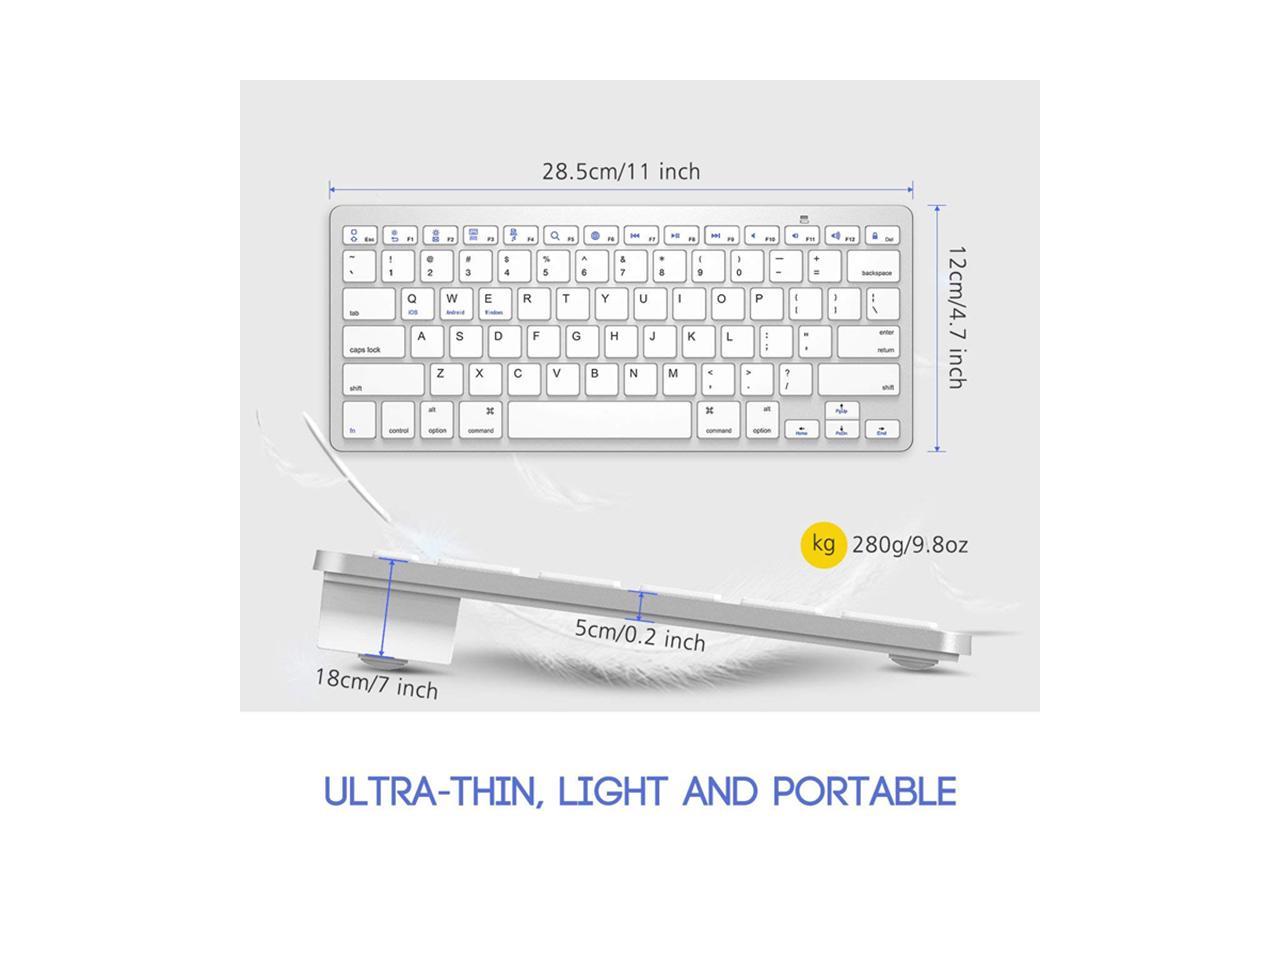 白色 78 Keys Ultra Thin Keyboard Black&White Anti-Slip Design and Mini Keyboard with 78 Keys for PC Laptop Office or Gaming First Choice for Home 